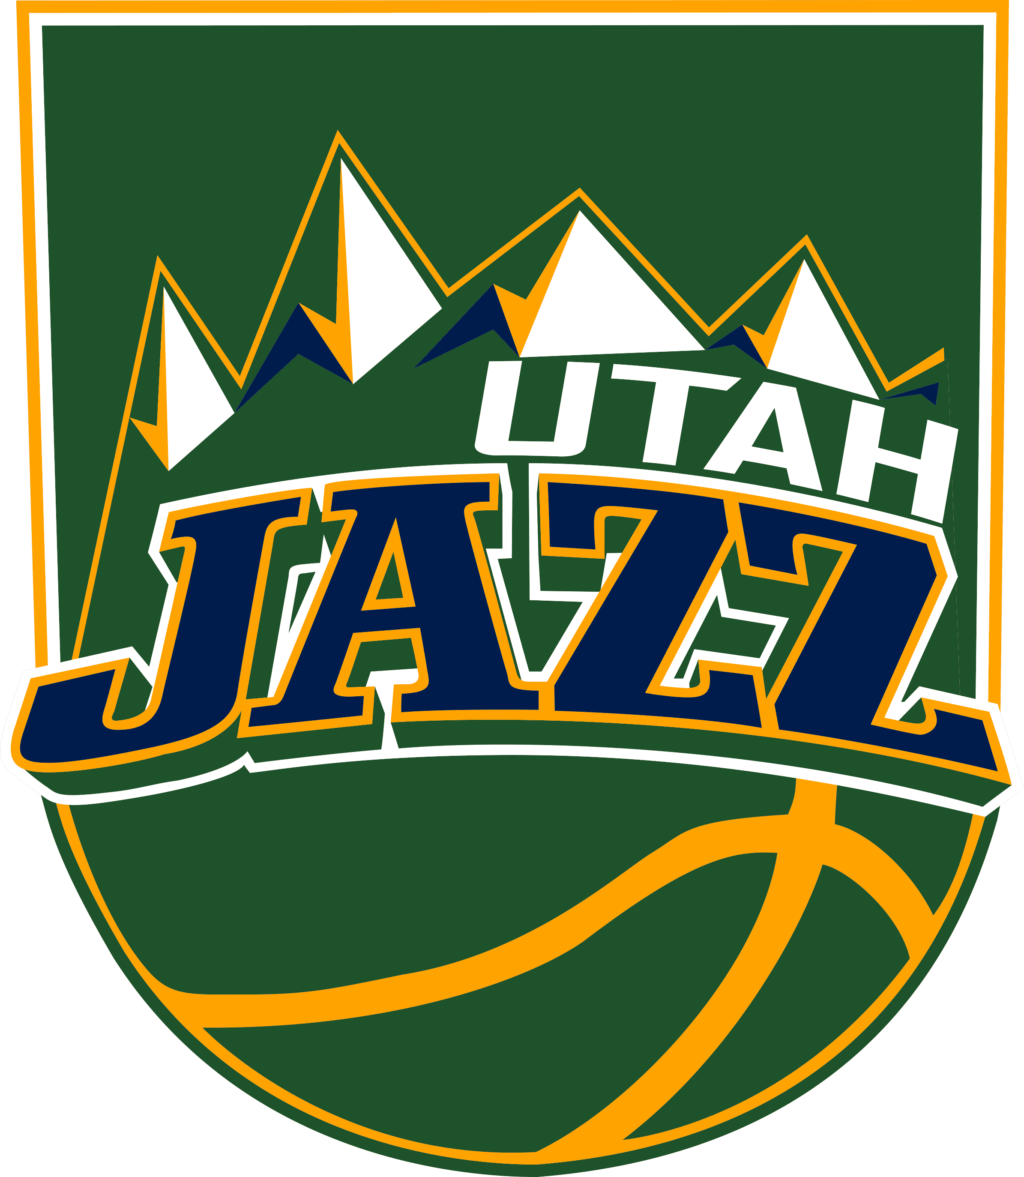 utah jazz 03 12 Styles NBA Utah Jazz Svg, Utah Jazz Svg, Utah Jazz Vector Logo, Utah Jazz Clipart, Utah Jazz png, Utah Jazz cricut files.